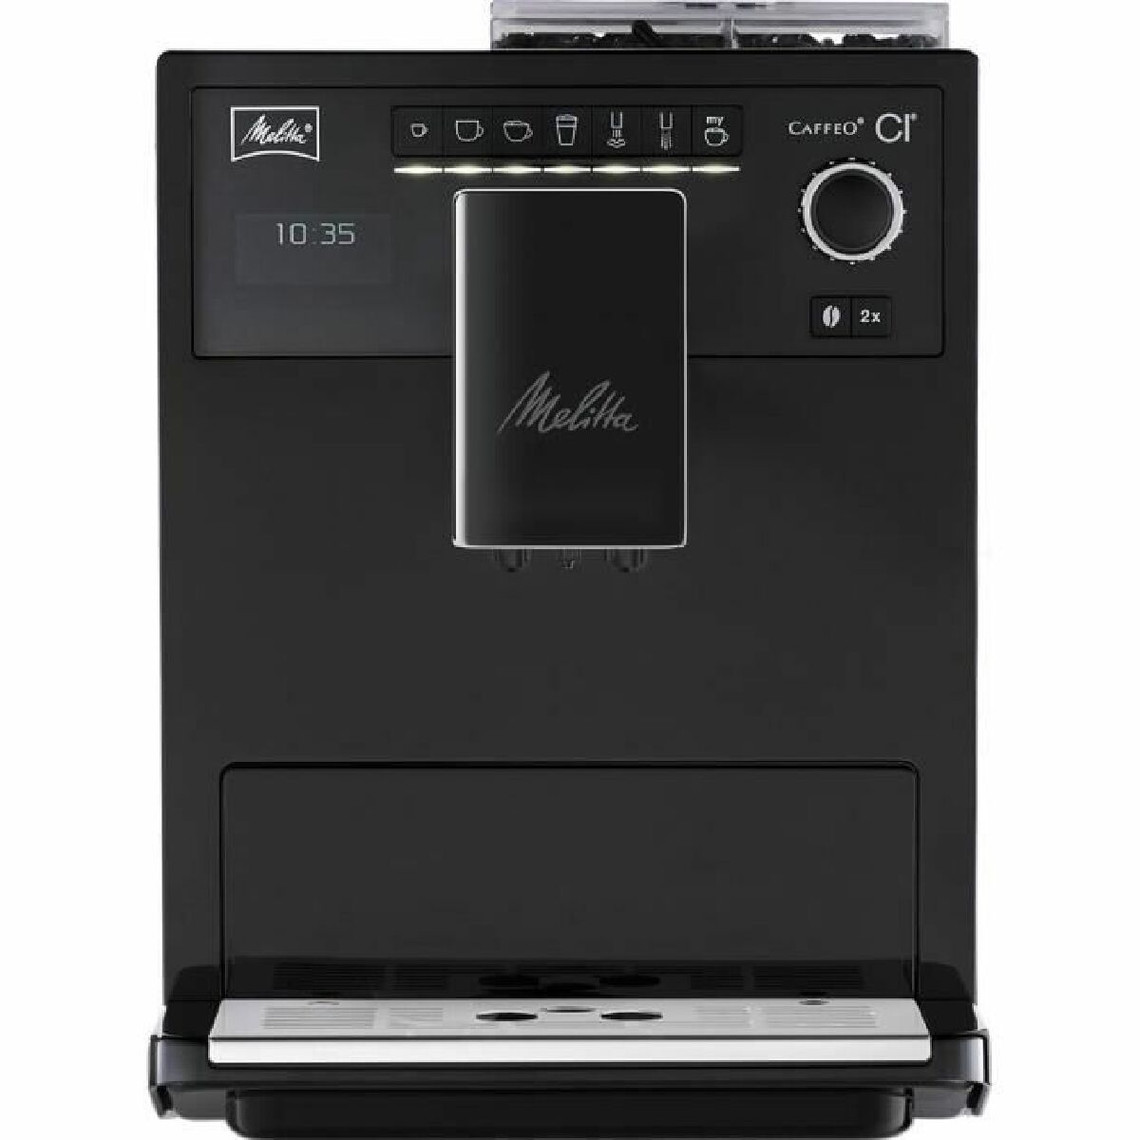 Melitta MELLITA Machine a café CI Pure Black - MAE970-003 - 4 intensités de café, 3 réglages possibles du moulin conique en acie